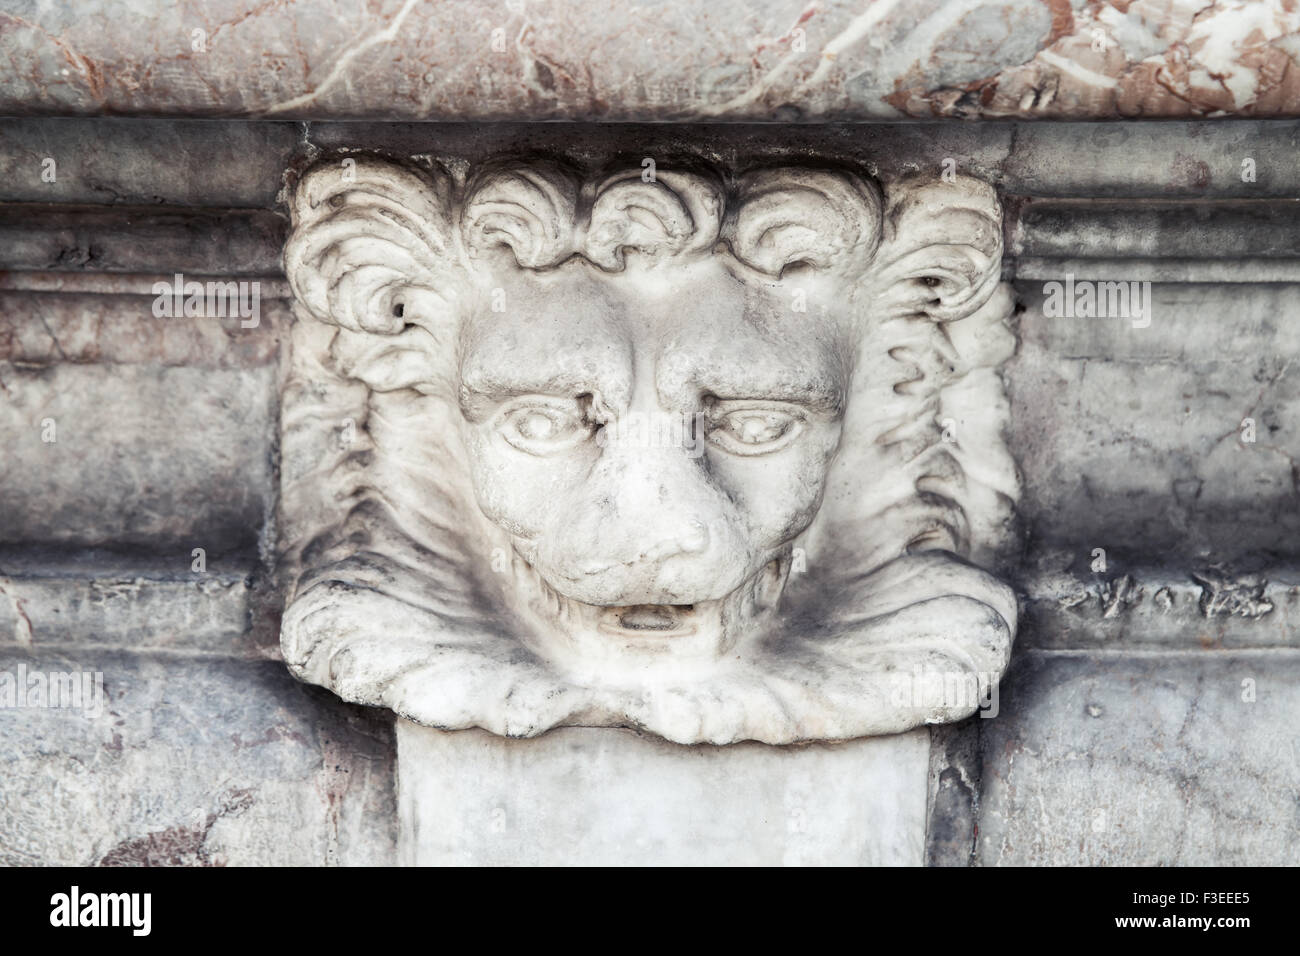 Lion head sculpture, decorative detail of fountain in Italy, Roma. Piazza della Rotonda. Fontana del Pantheon Stock Photo